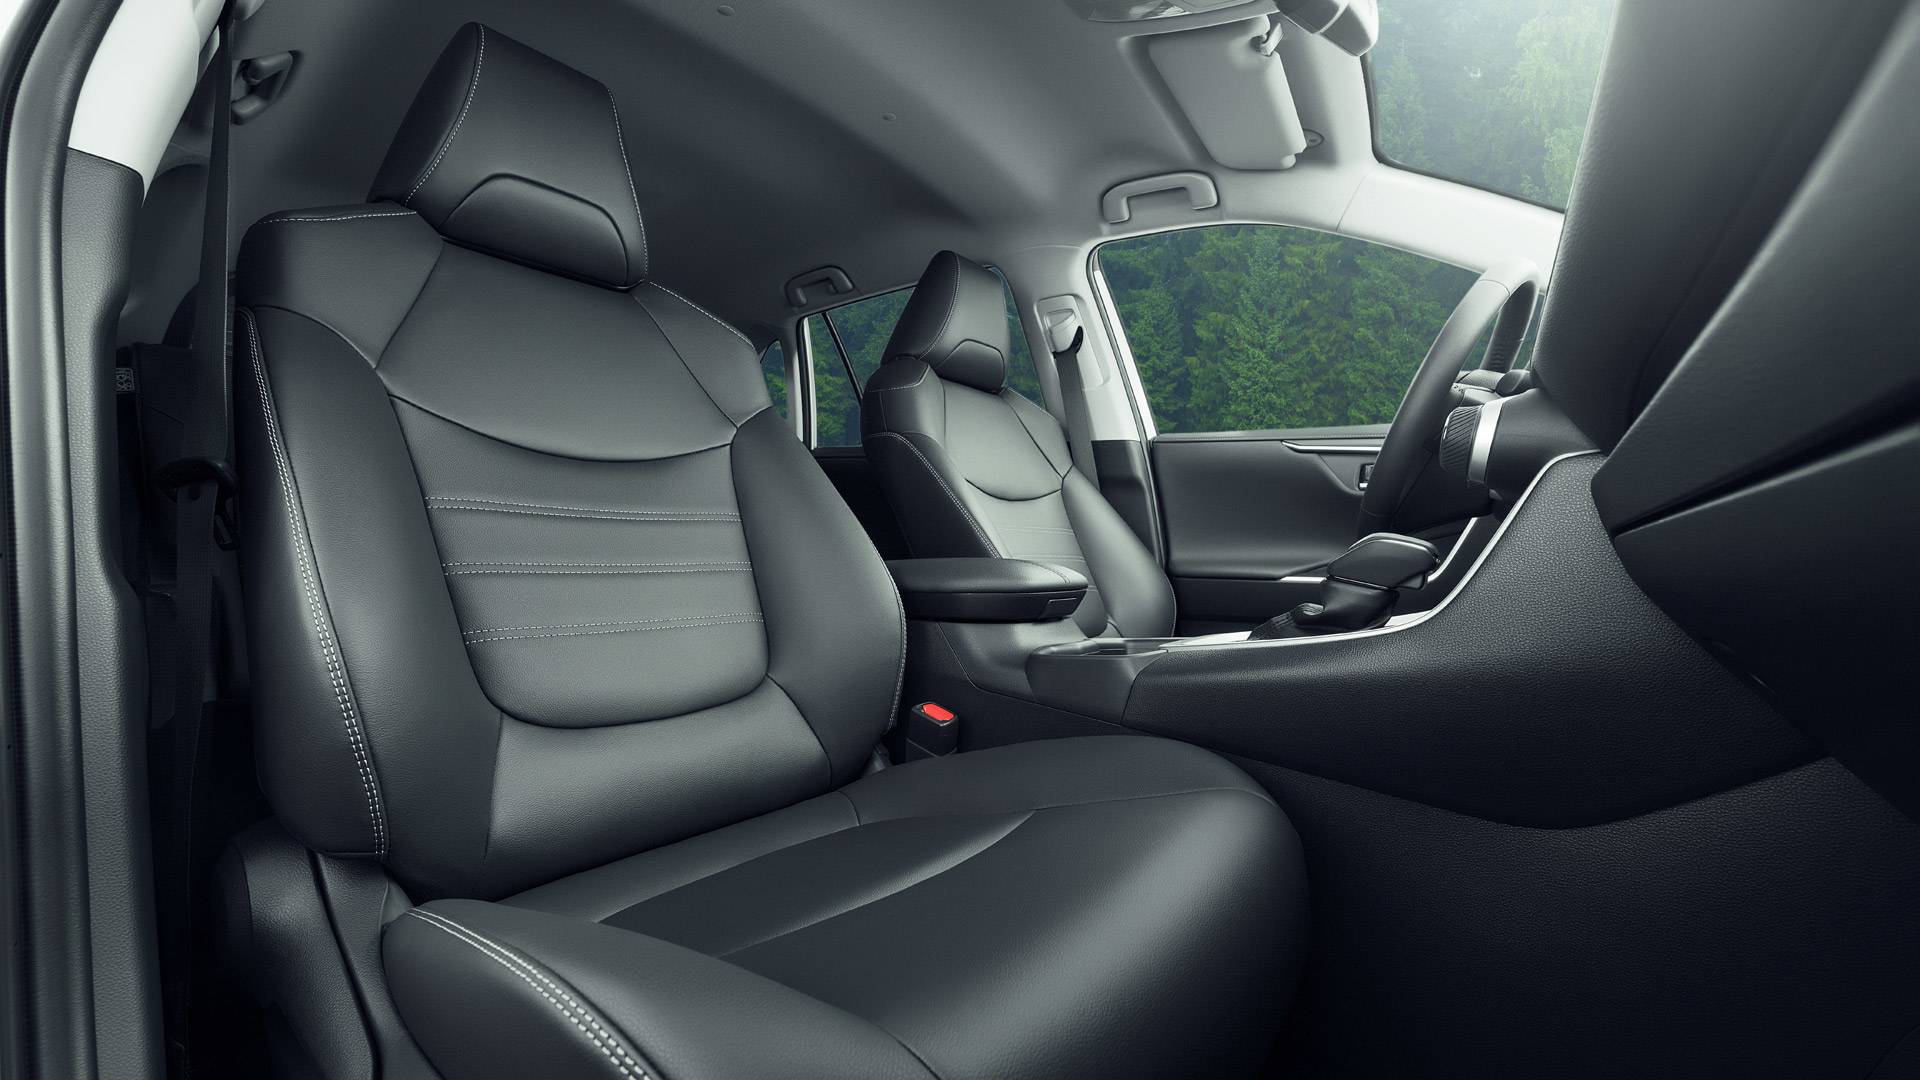 Зона комфорта: Toyota RAV4 меняет представление о полном приводе